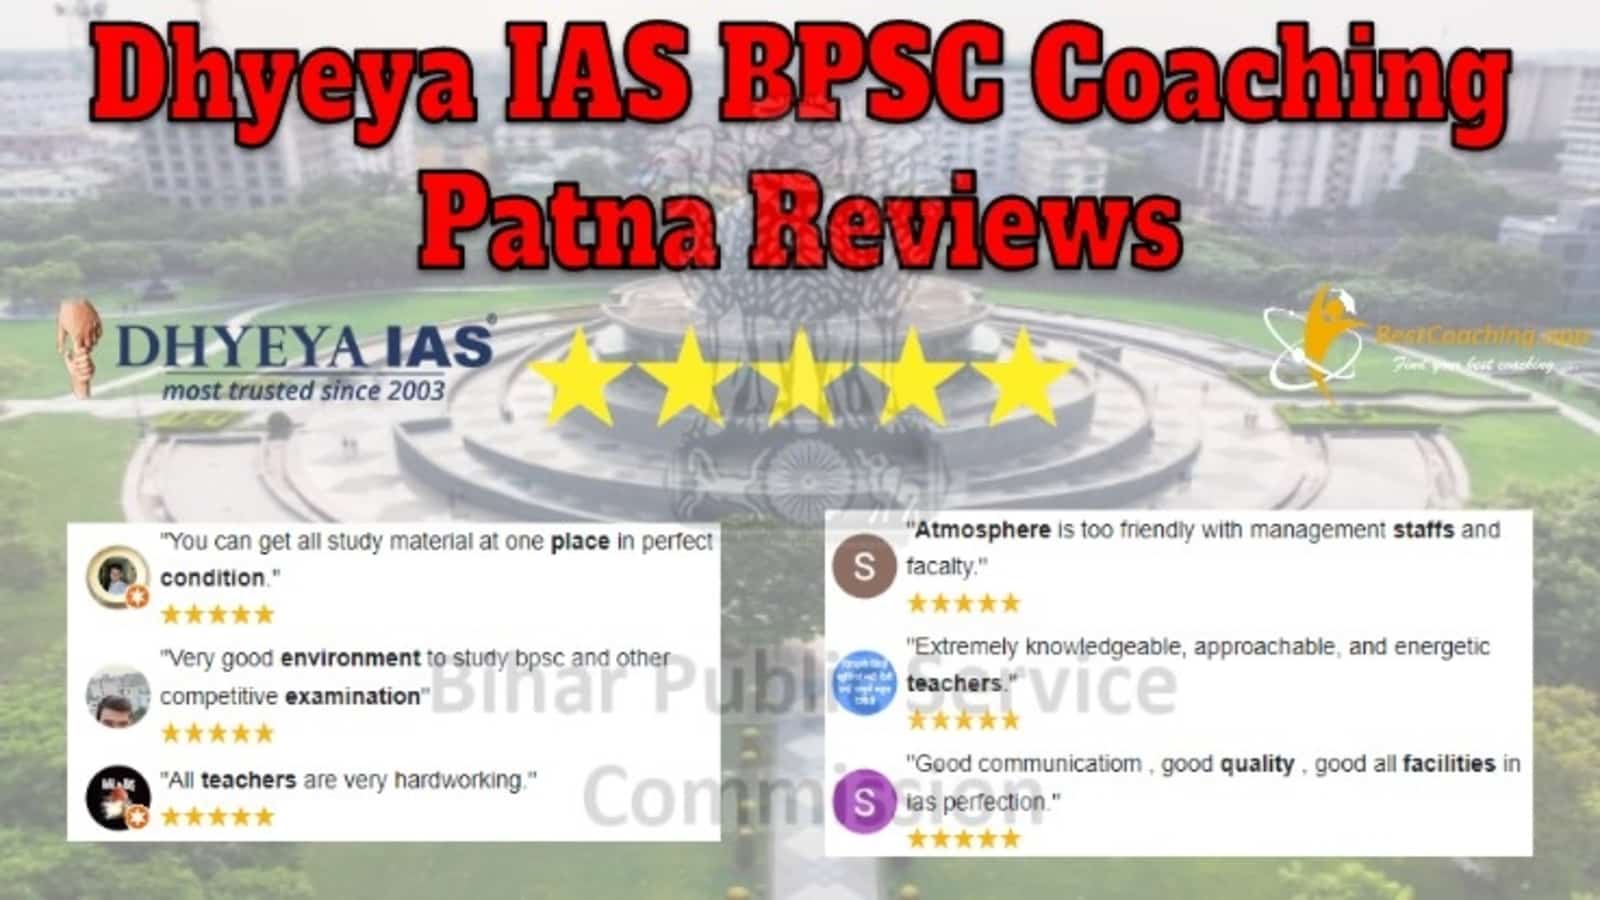 Dhyeya IAS BPSC Coaching in Patna Reviews